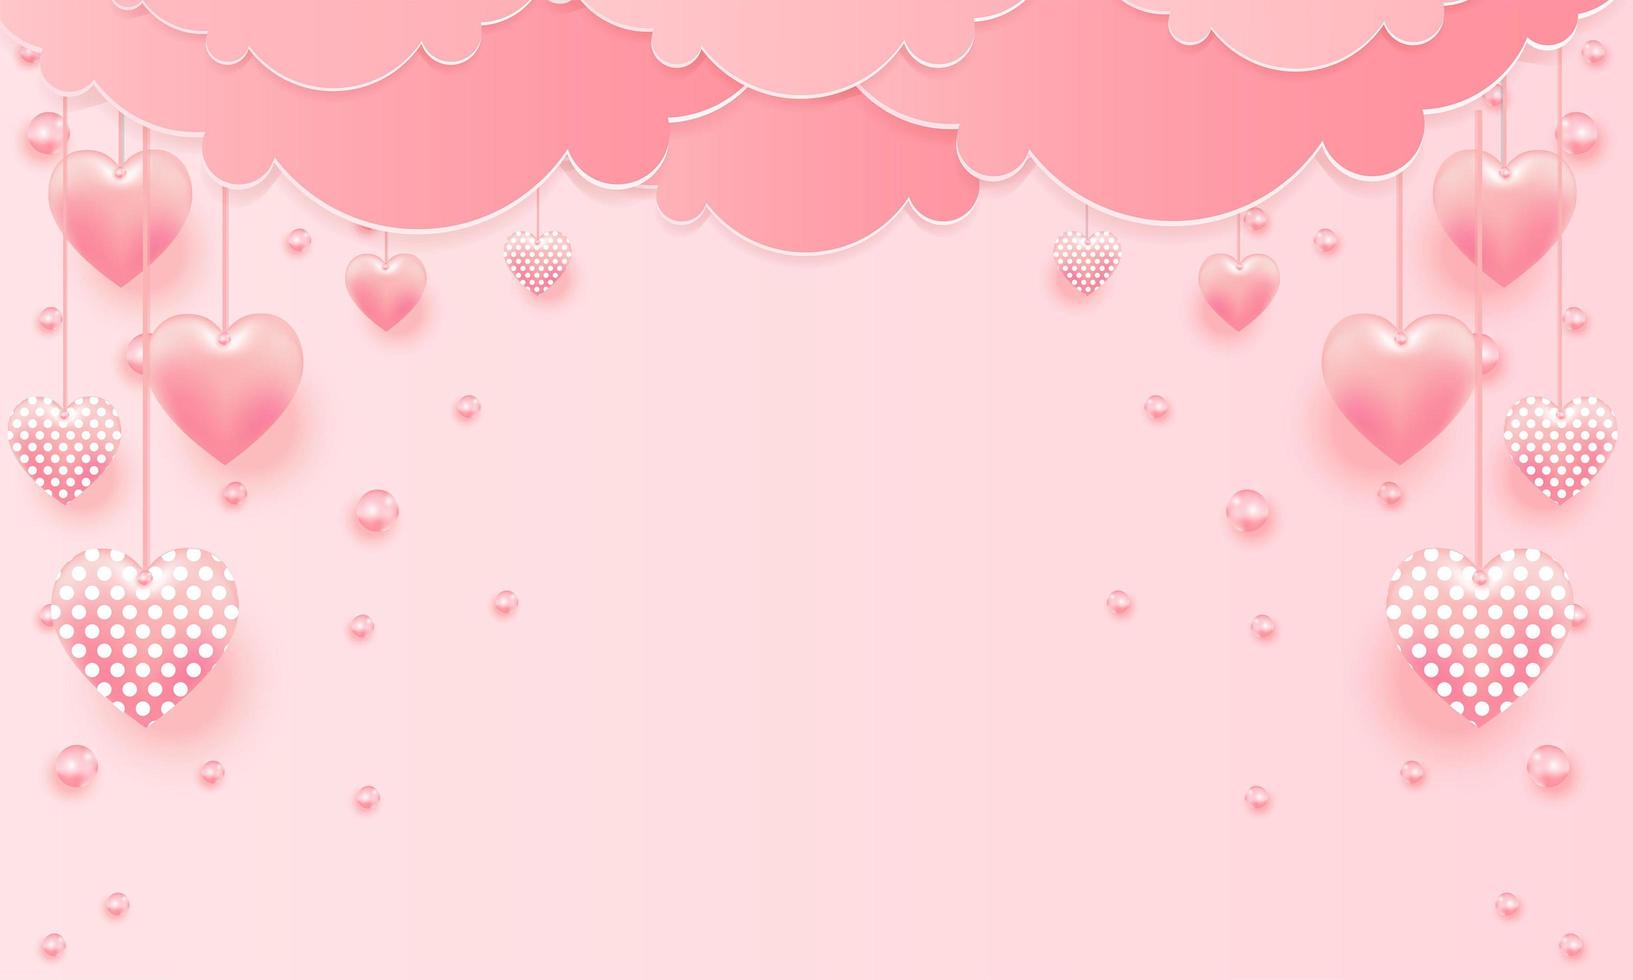 Valentijnsdag verkoop achtergrond met ballonnen hart patroon. vector illustratie. behang, flyers, uitnodiging, posters, brochure, banners.